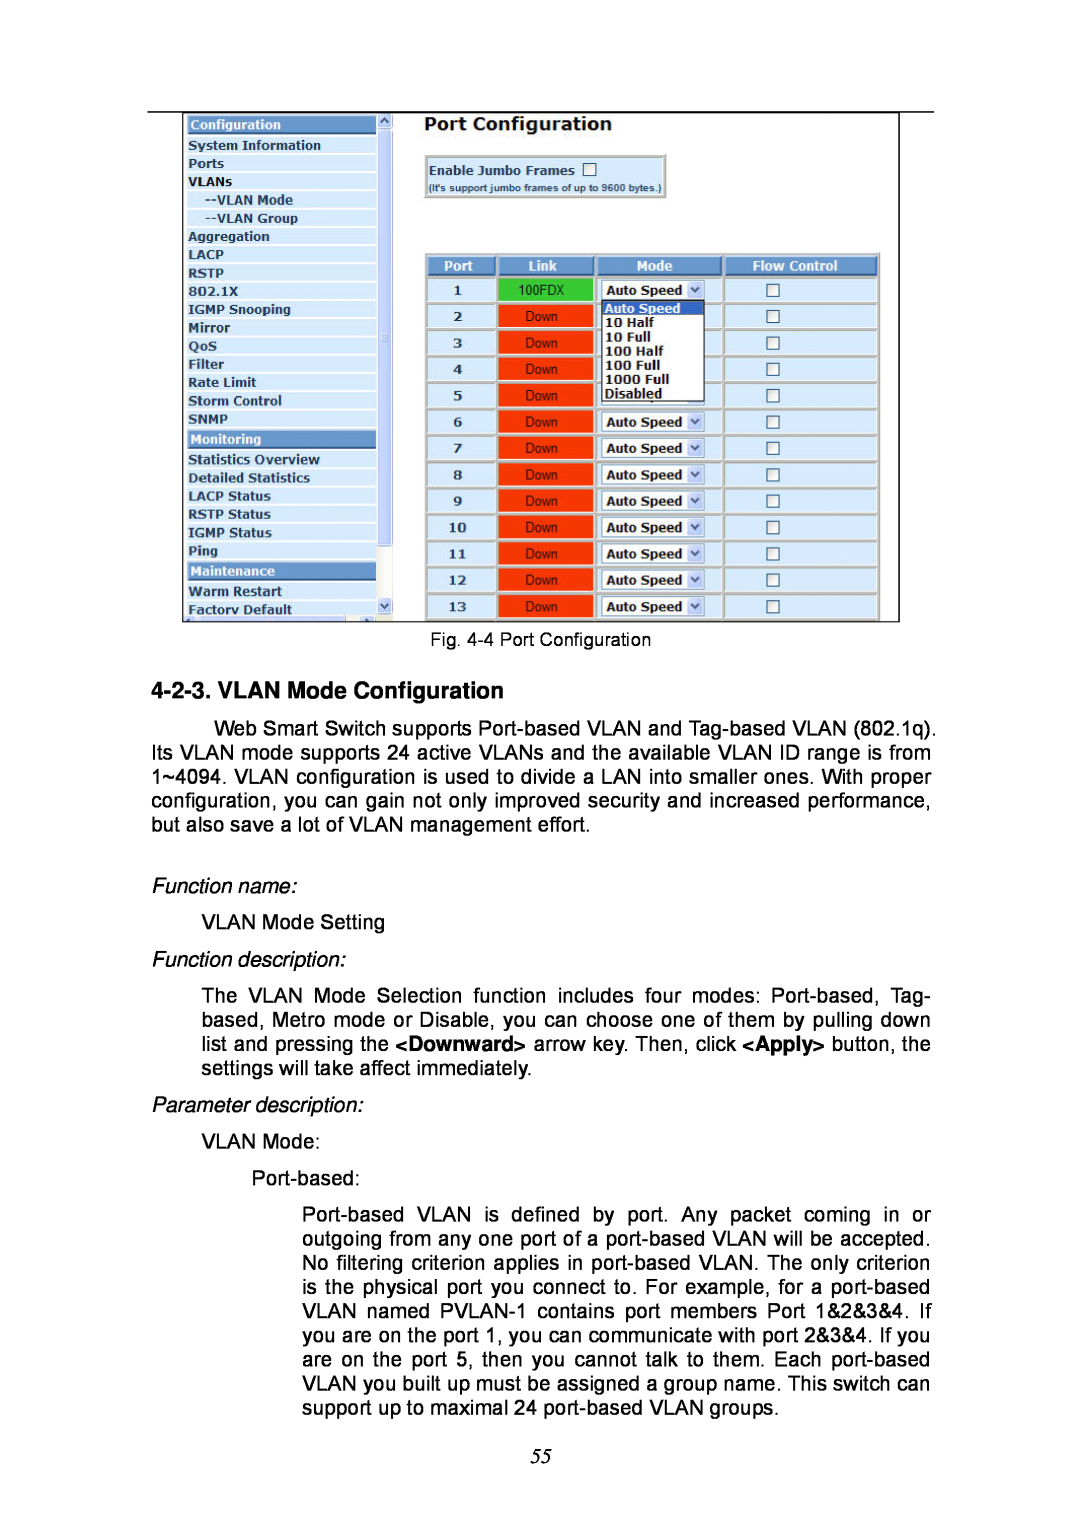 KTI Networks KGS-2404 manual VLAN Mode Configuration, Function name, Function description, Parameter description 